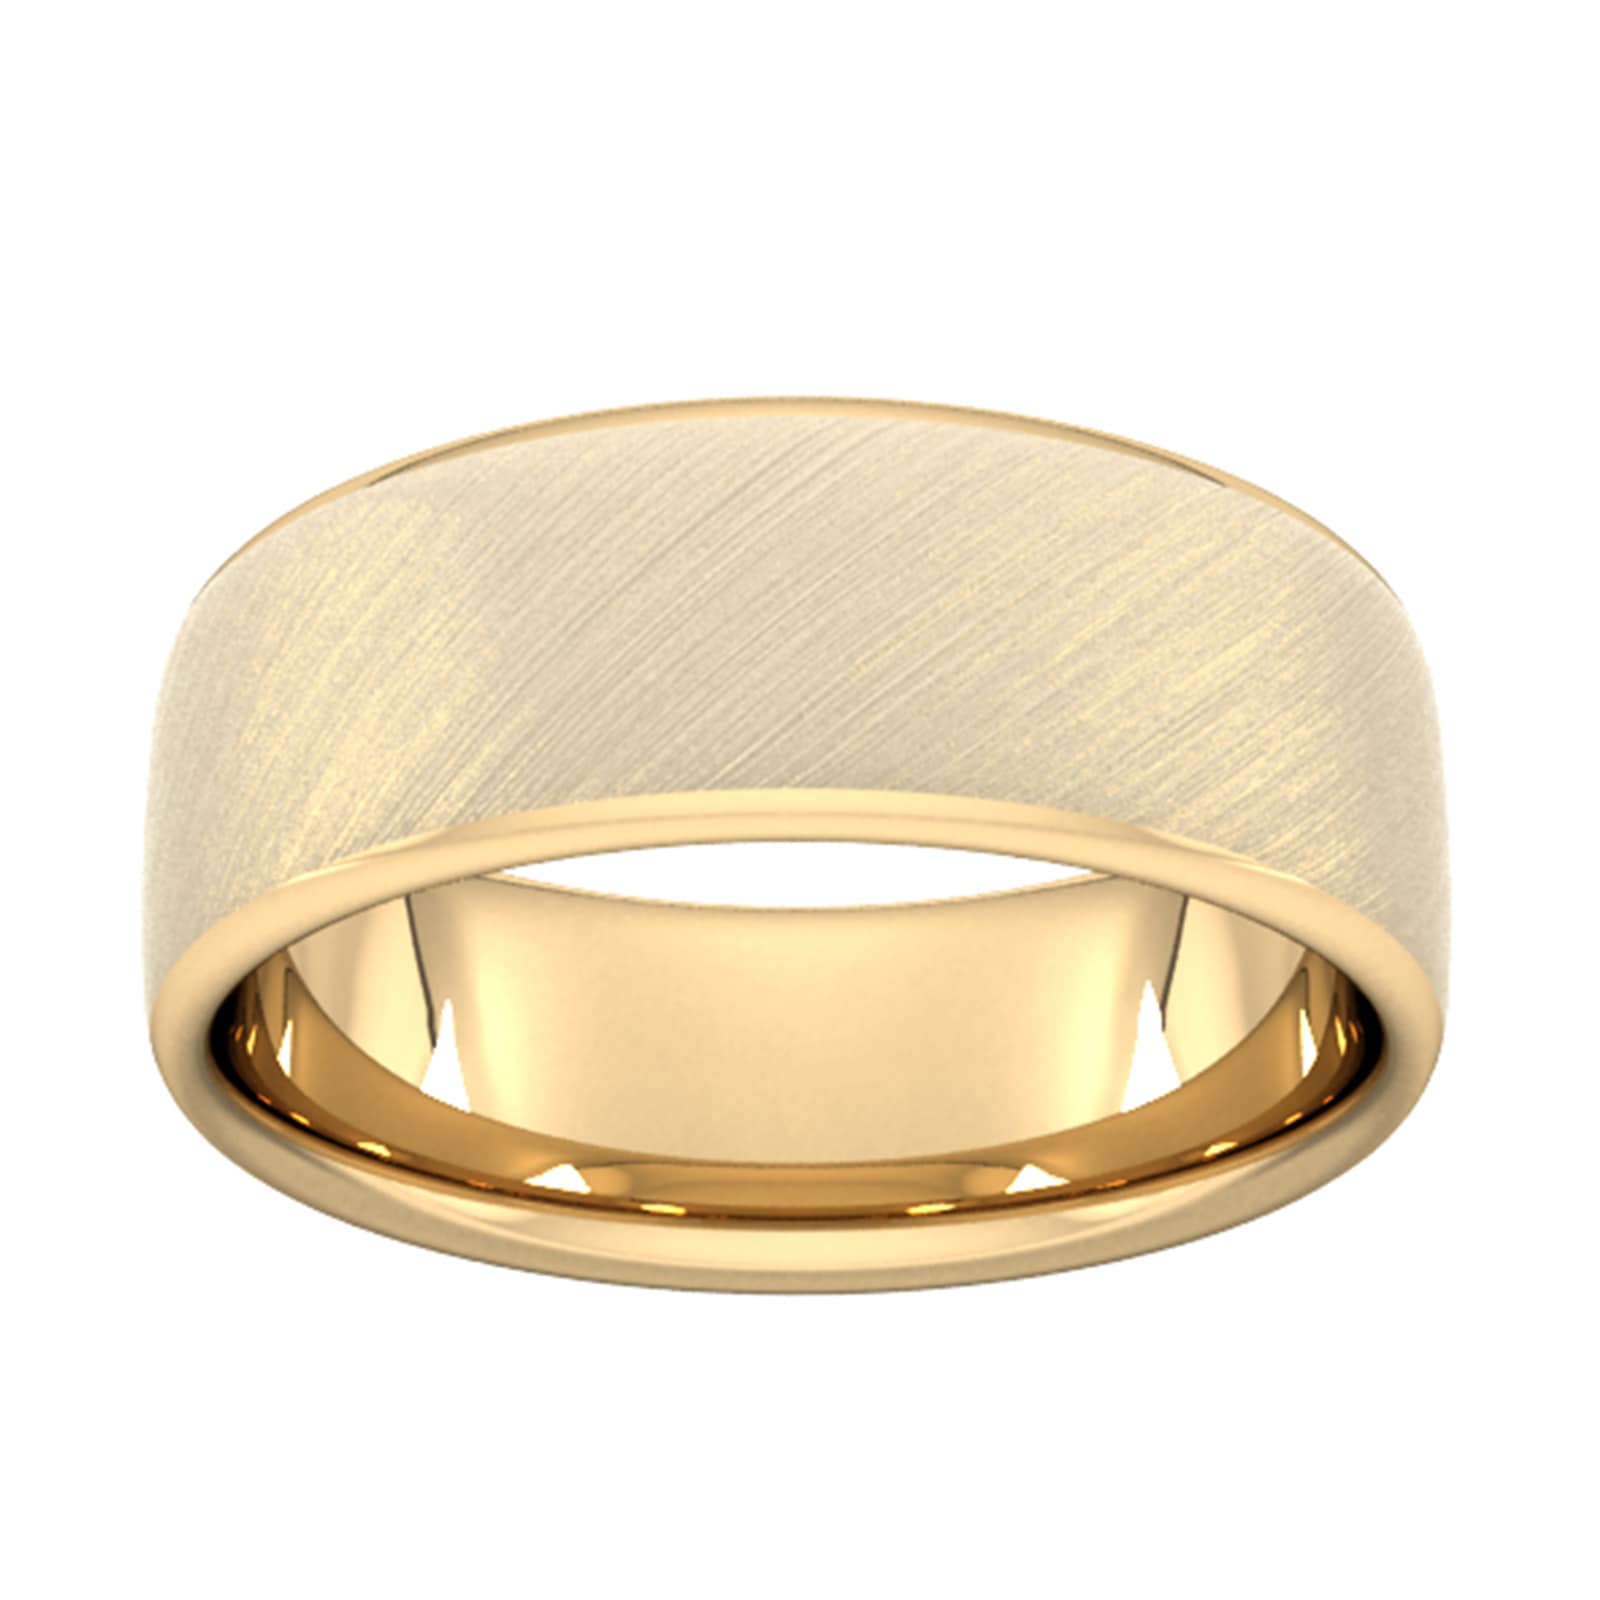 8mm Slight Court Extra Heavy Diagonal Matt Finish Wedding Ring In 18 Carat Yellow Gold - Ring Size V